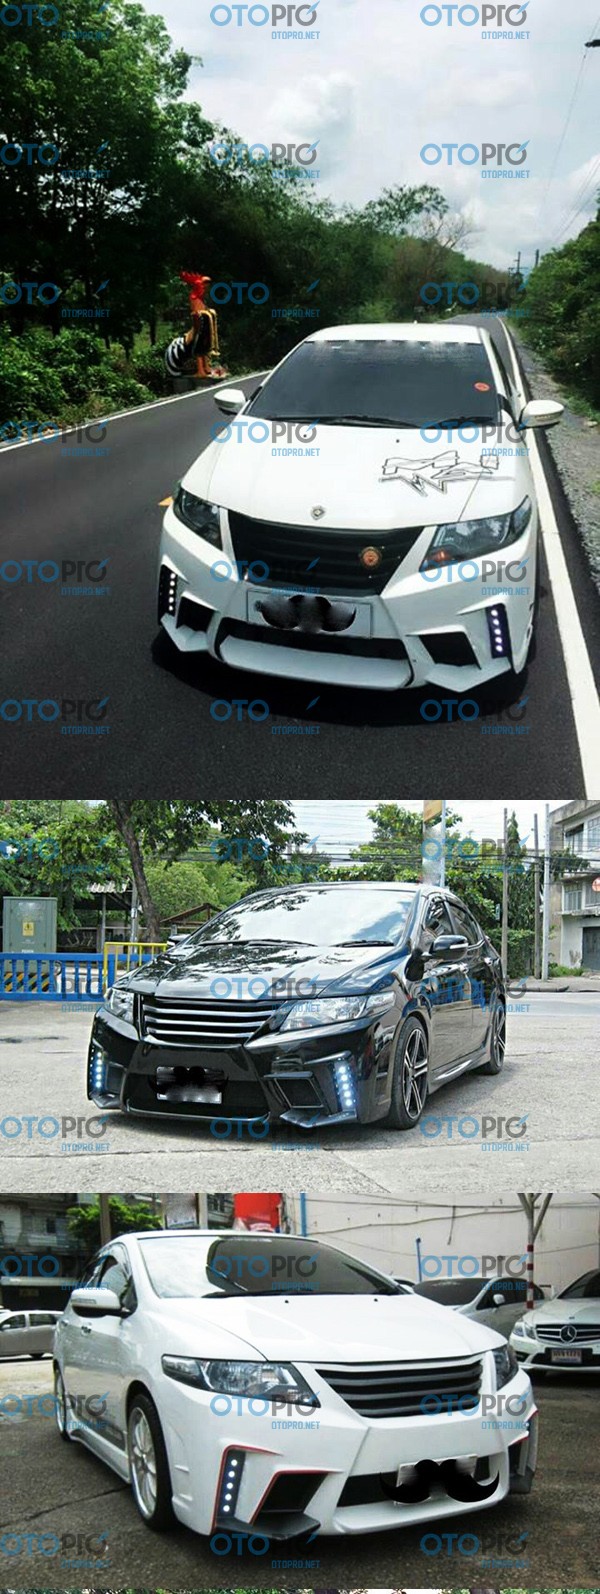 Bodykit cho Honda City 2010-2012 mẫu NT1 nhập khẩu Thái Lan